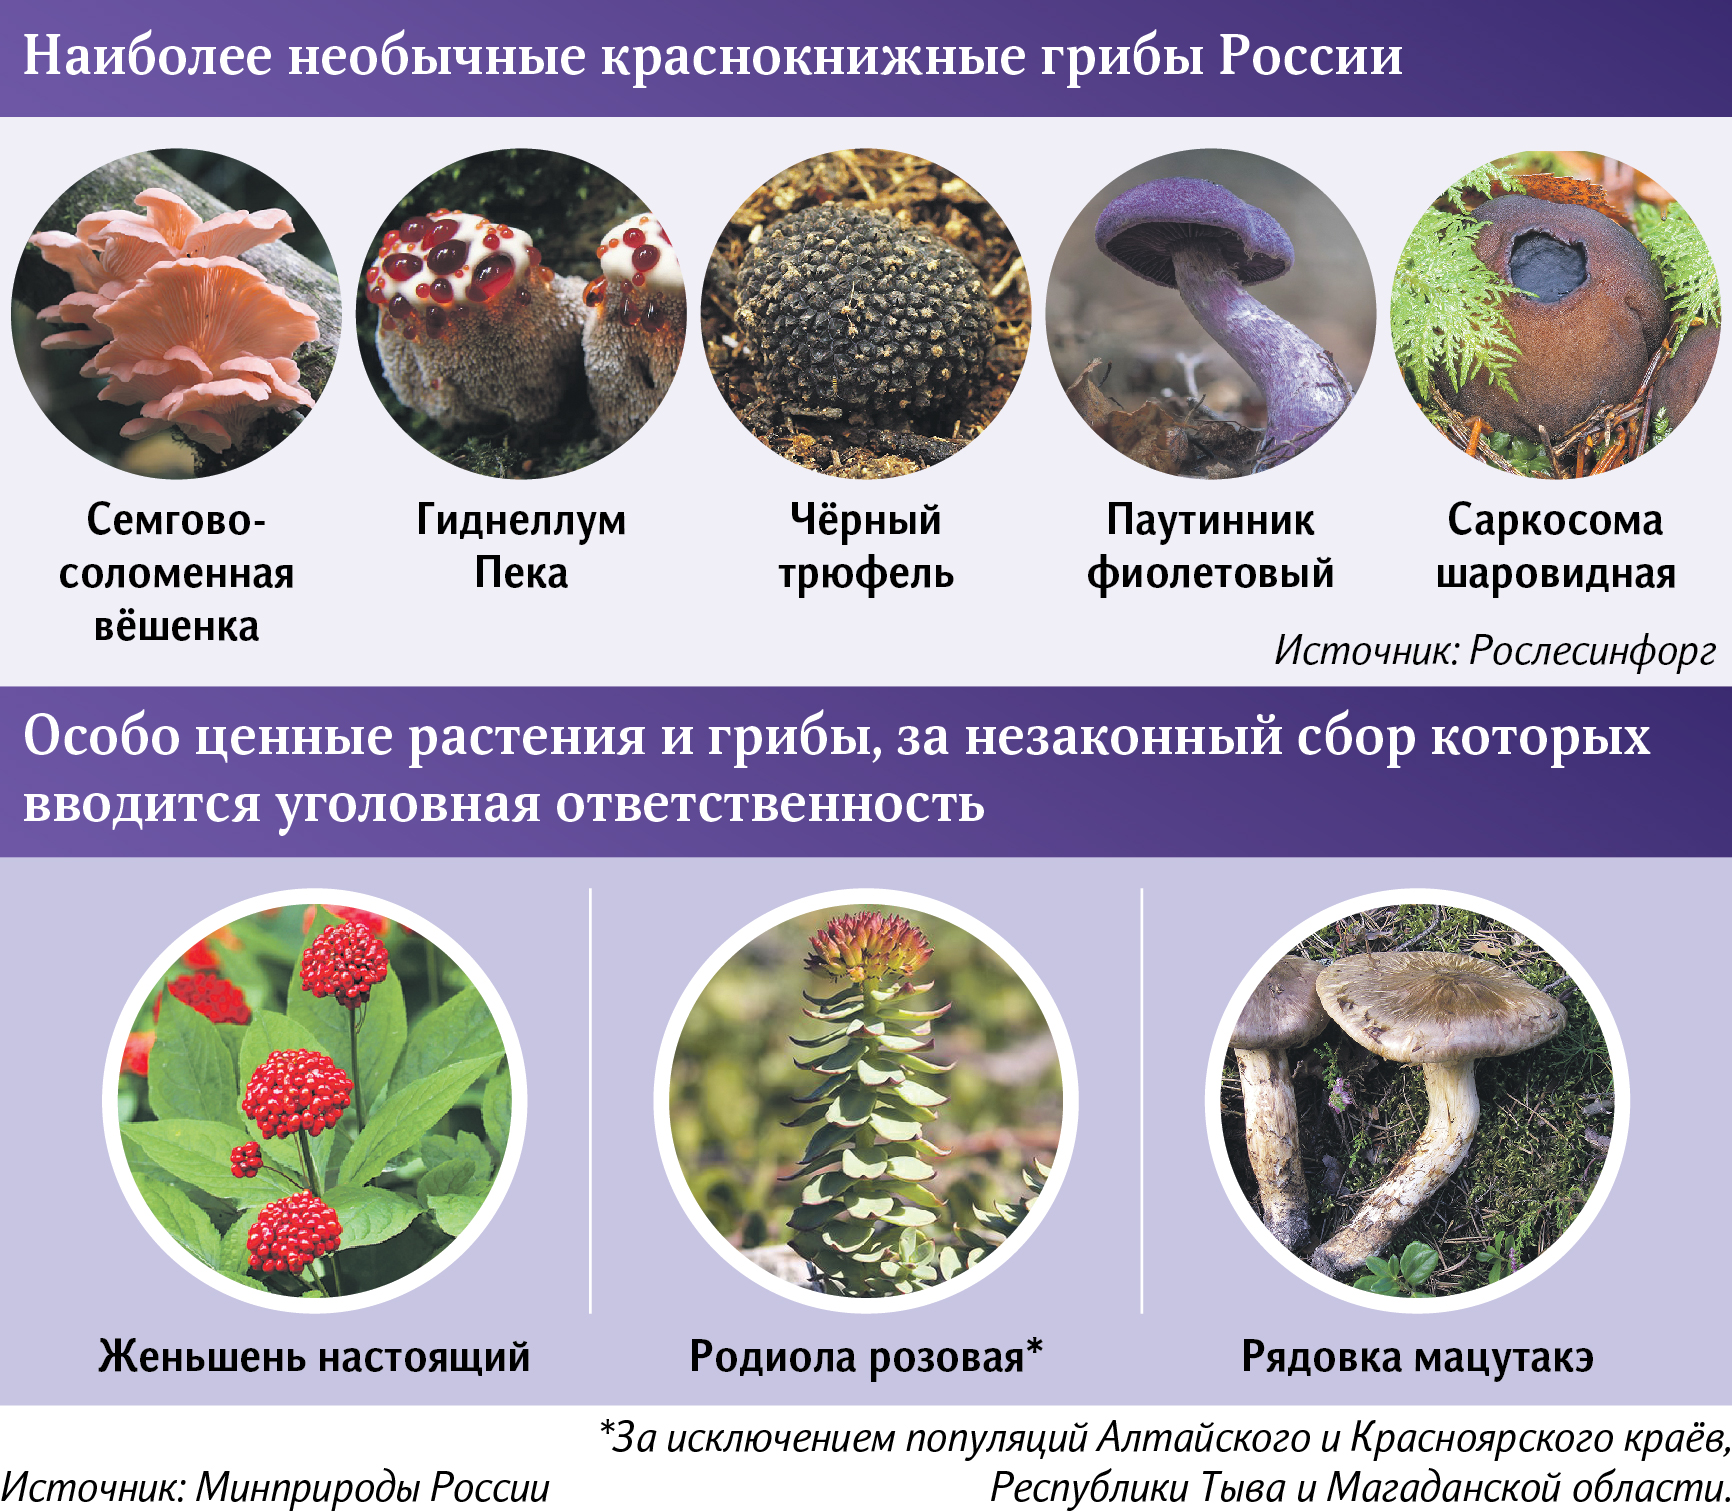 ТОП ядовитых грибов Беларуси: названия и фото с описаниями